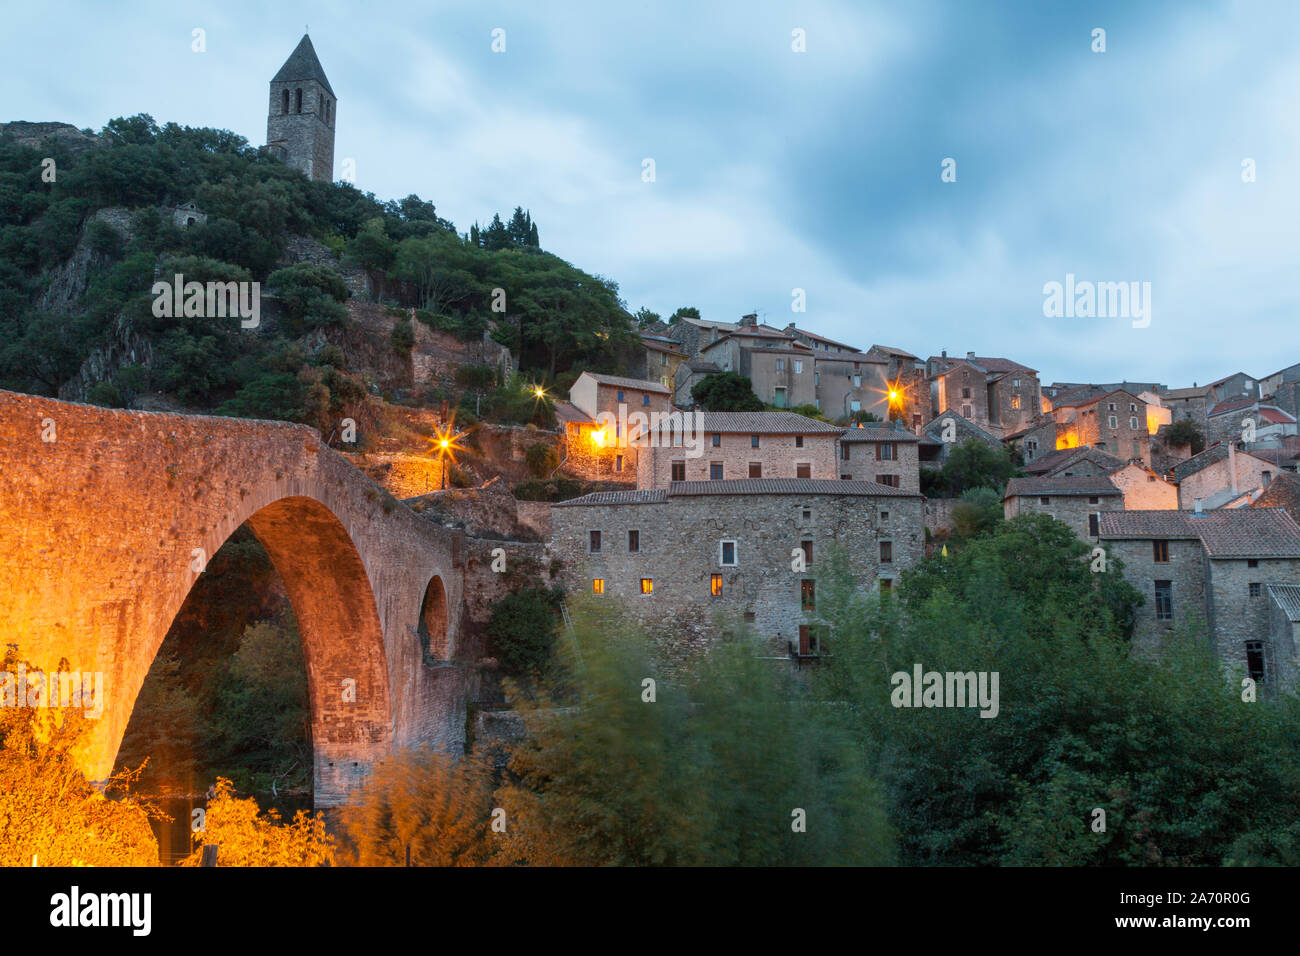 Francia, Languedoc-Roussilon, Olargues, Pont du Diable bridge e la graziosa collina villaggio di olargues in montagna nera al tramonto. Foto Stock